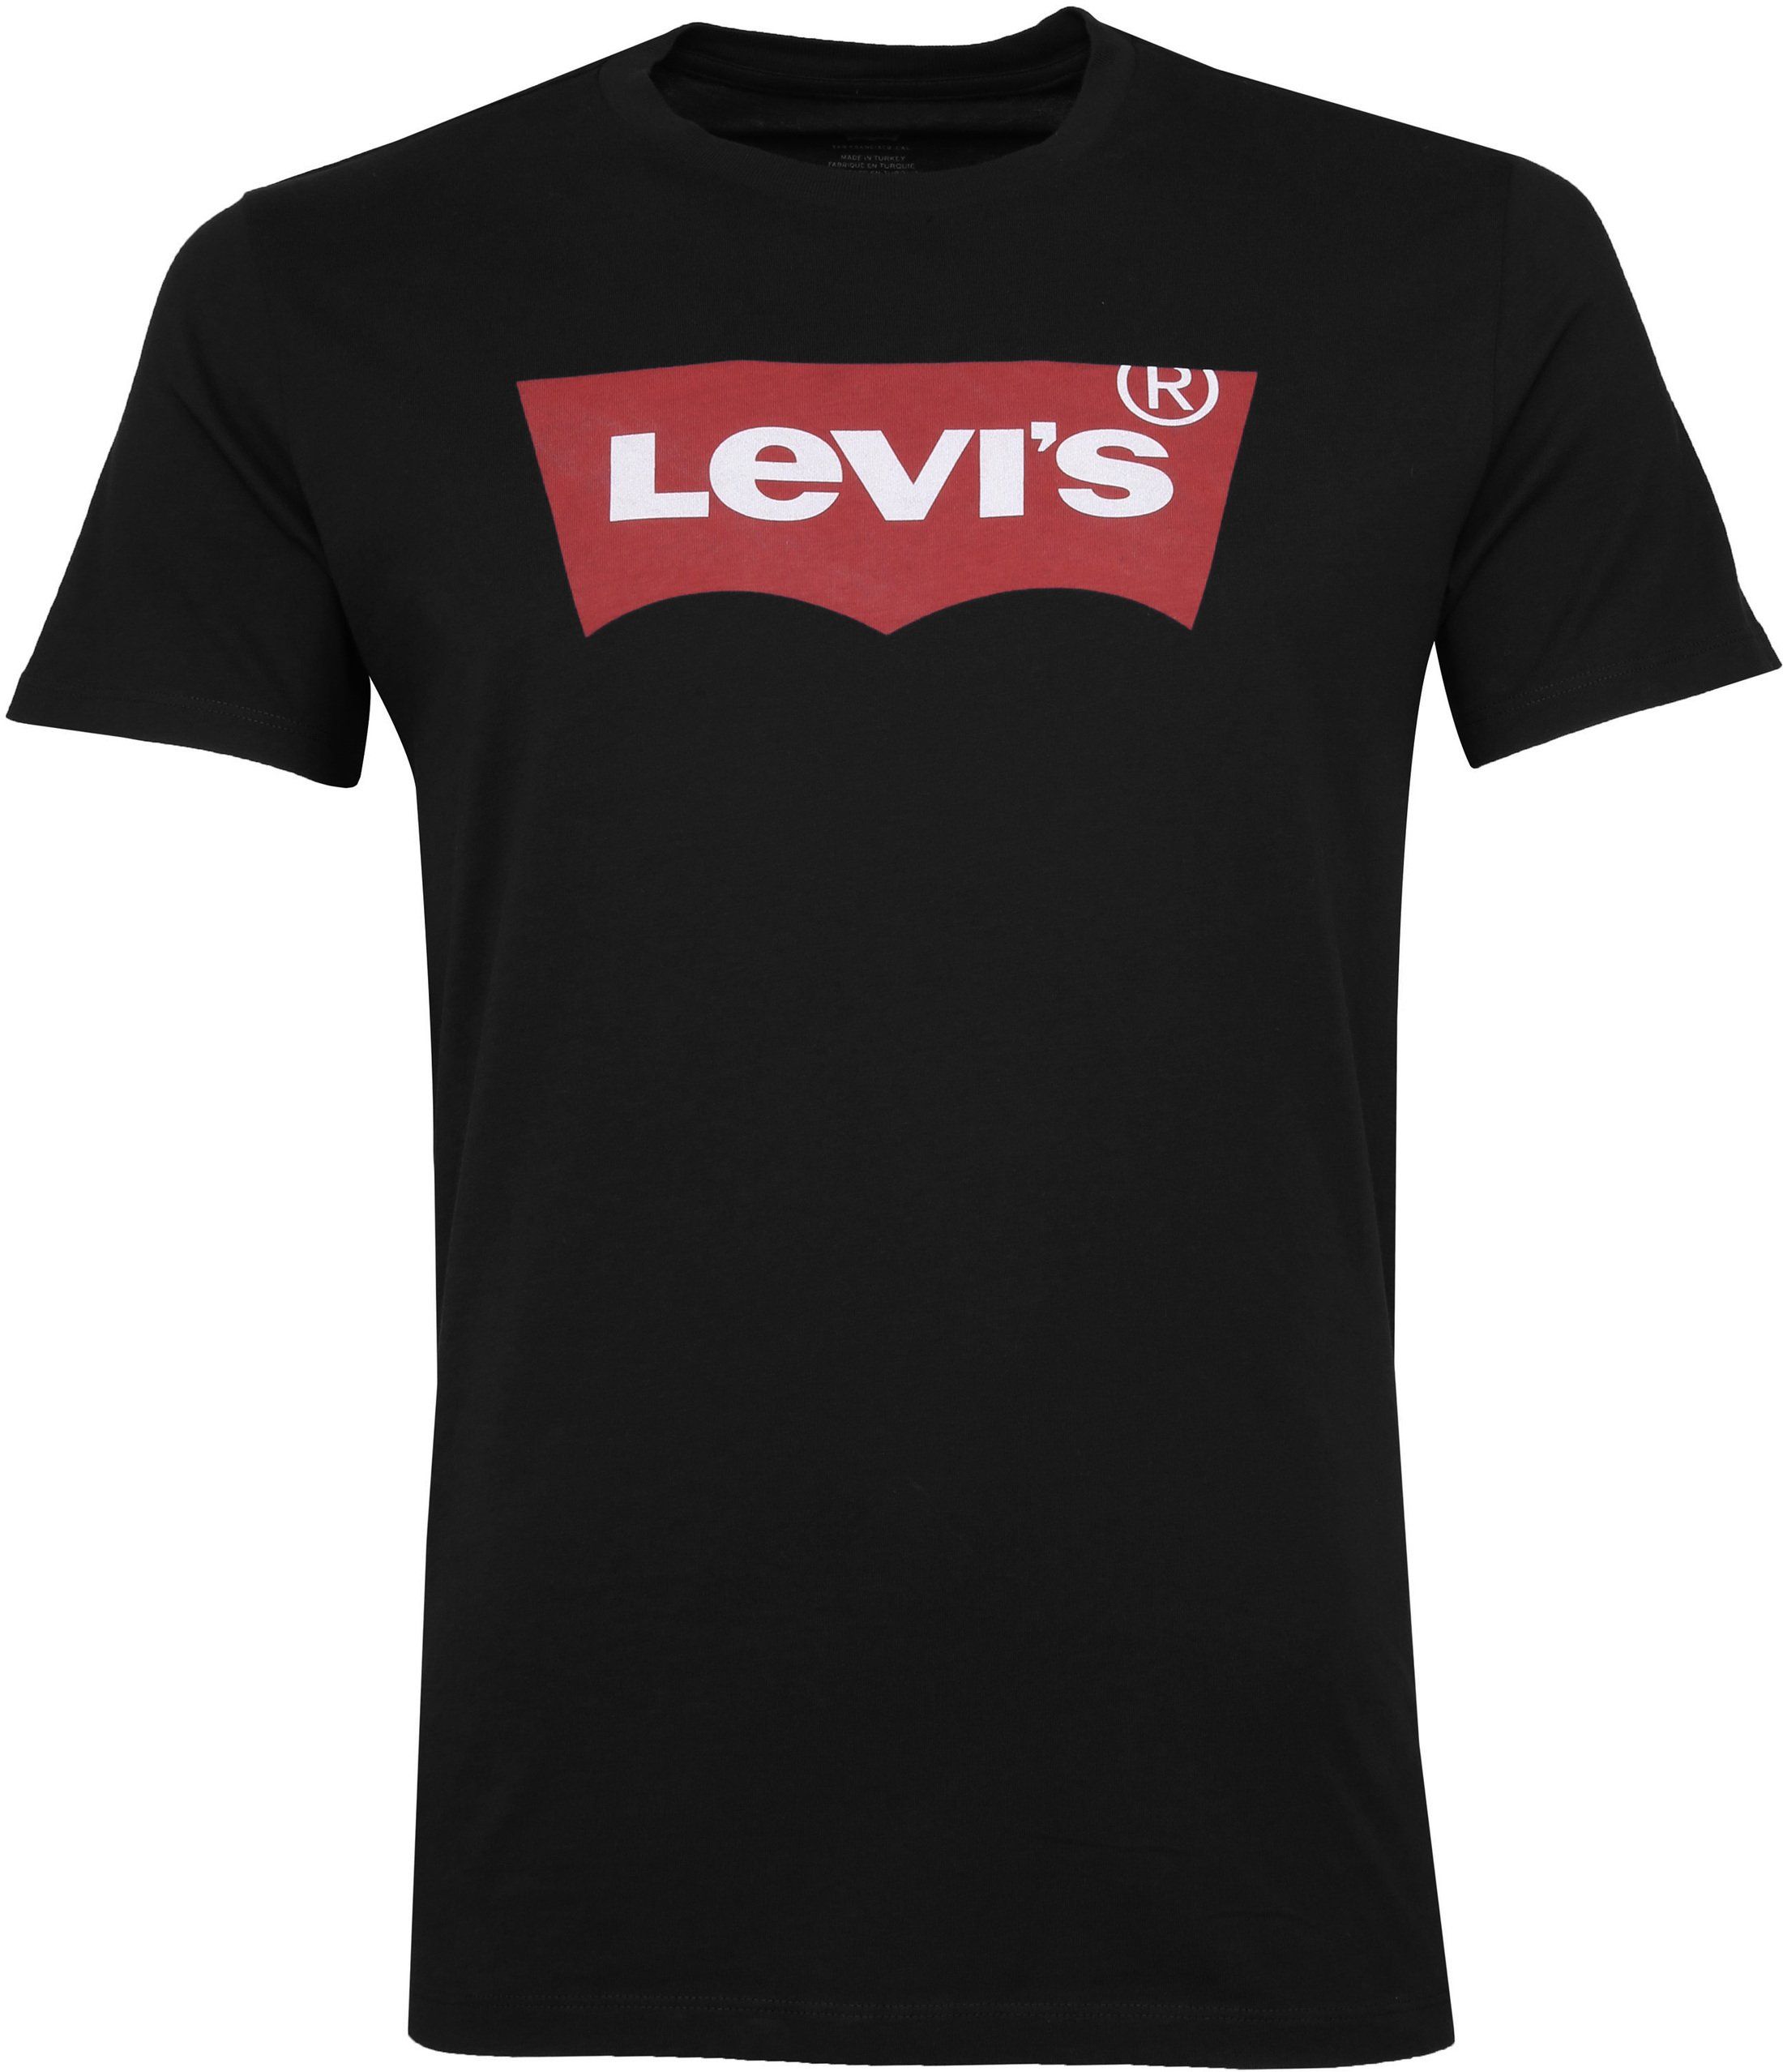 Levi's T-shirt Logo Print Black size L